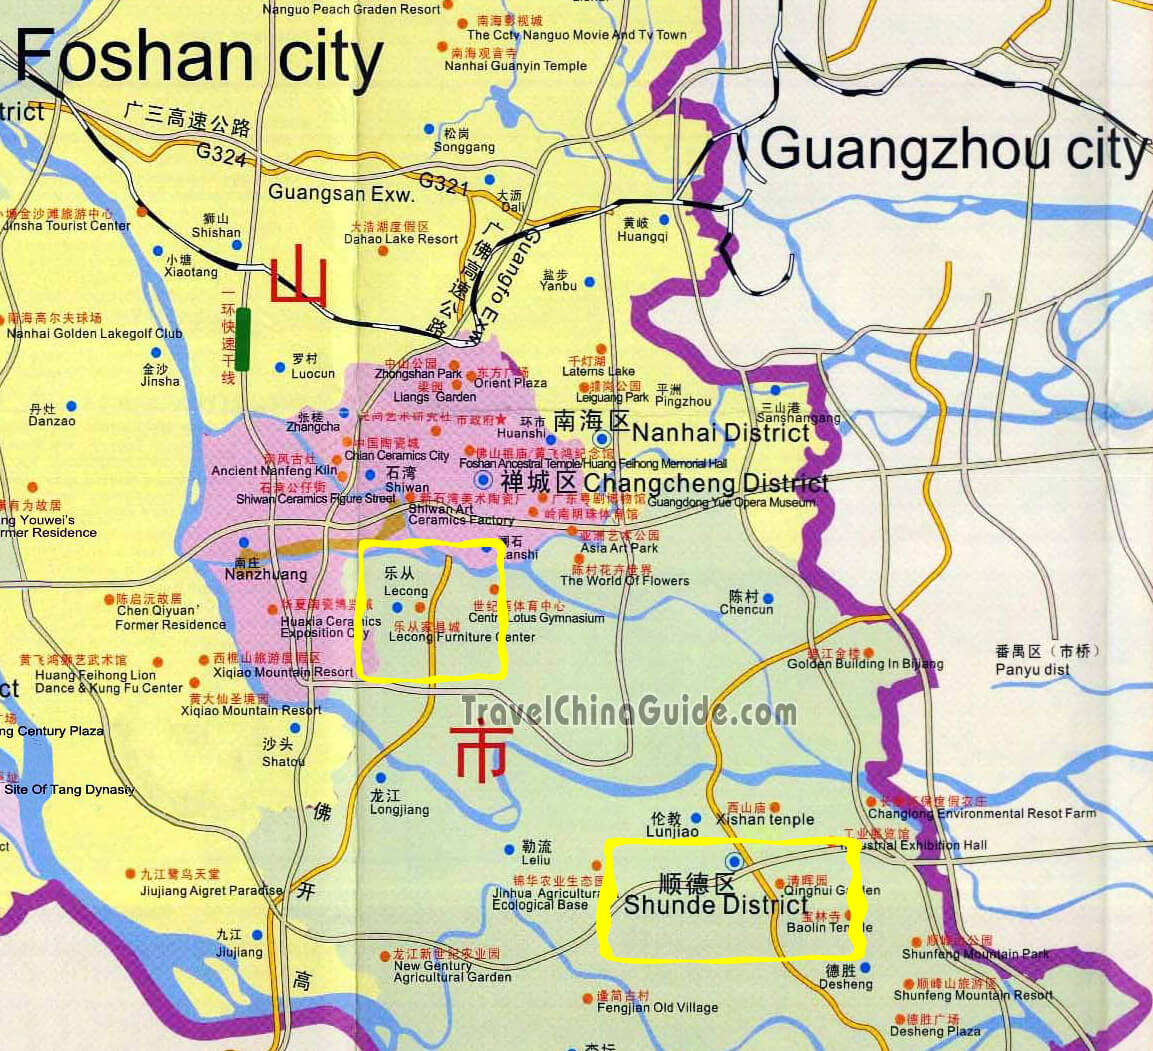 Foshan furniture town